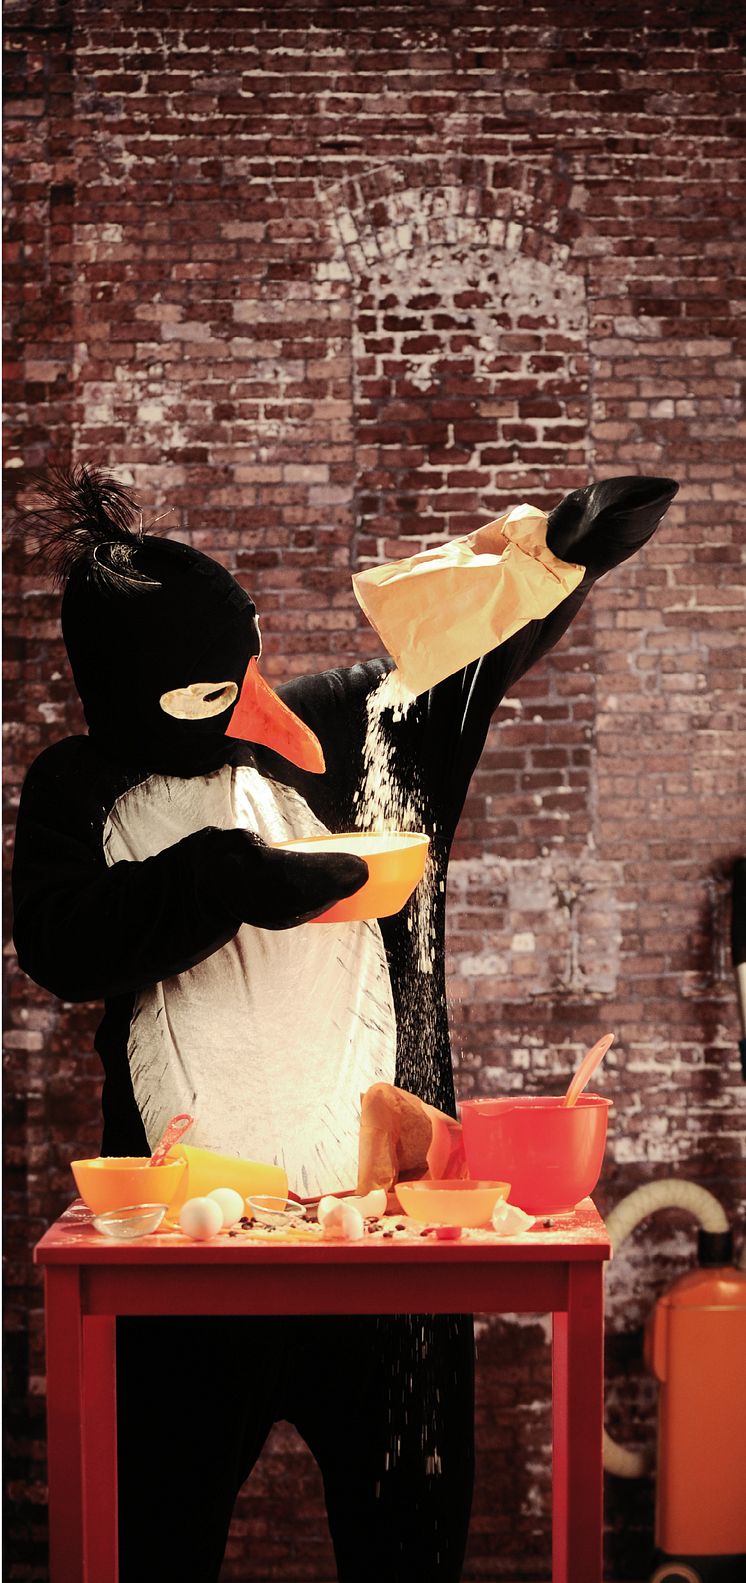 Pingviner kan inte baka ostkaka av Ulrich Hub i regi av Lars Norén